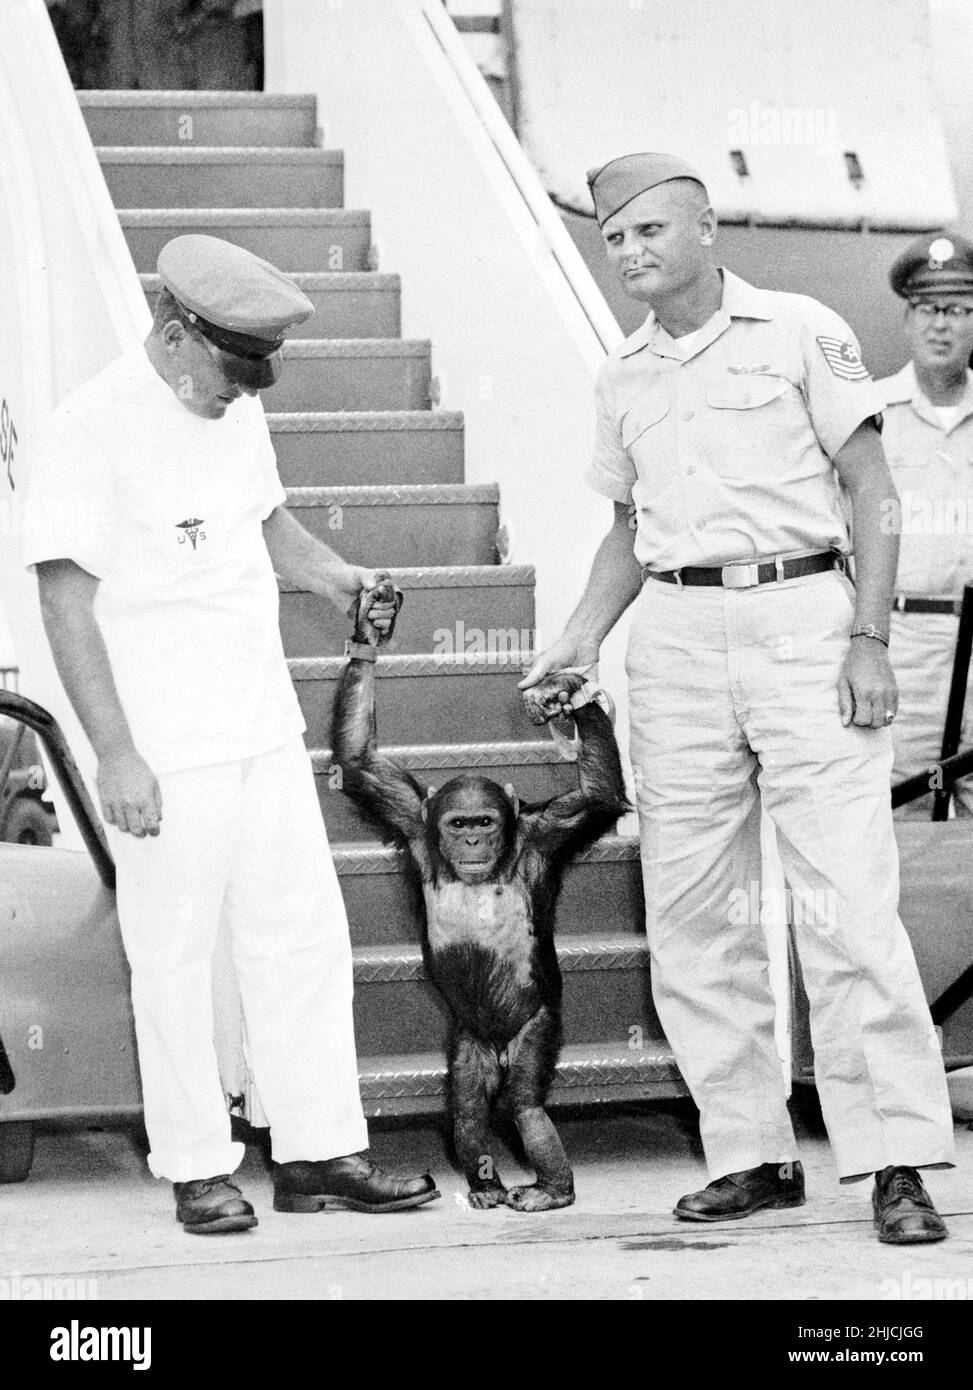 Enos kommt zurück auf der Patrick Air Force Base. Enos (d. 4. November 1962) war der 2nd ins All gestartete Schimpansen und der erste Schimpansen, der die Erdumlaufbahn erreicht hat. Enos' Flug fand am 29. November 1961 statt. Sein Training war für ihn intensiver als für seinen Vorgänger Ham, da Enos über längere Zeit Schwerelosigkeit und höheren gs ausgesetzt war. Seine Ausbildung beinhaltete Psychomotorunterricht und Flugzeugflüge. Enos starb an einer durch Shigellose bedingten Dysenterie, die gegen damals bekannte Antibiotika resistent war. Pathologen berichteten über keine Symptome, die auf seinen Weltraumflug zurückzuführen oder mit ihm in Zusammenhang stehen könnten. Stockfoto